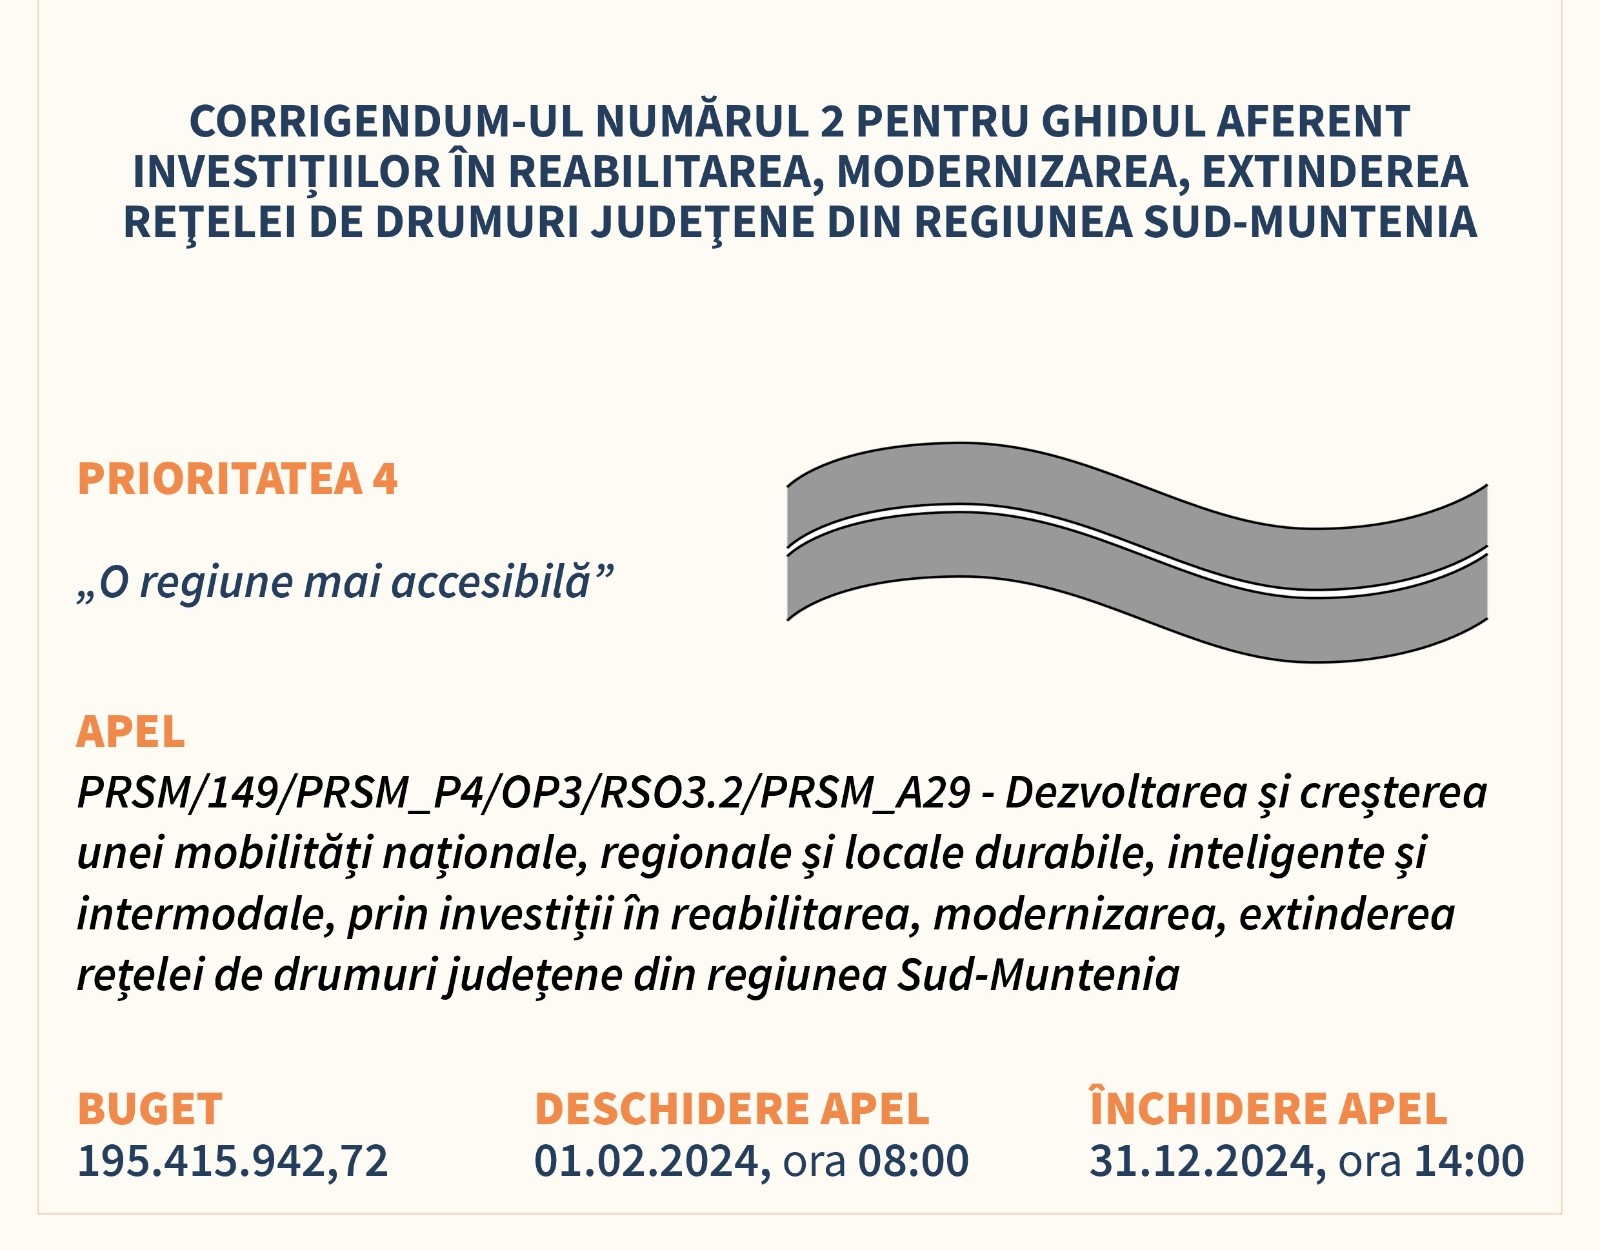 Corrigendum 2 pentru ghidul aferent investițiilor în reabilitarea, modernizarea, extinderea reţelei de drumuri judeţene din regiunea Sud-Muntenia